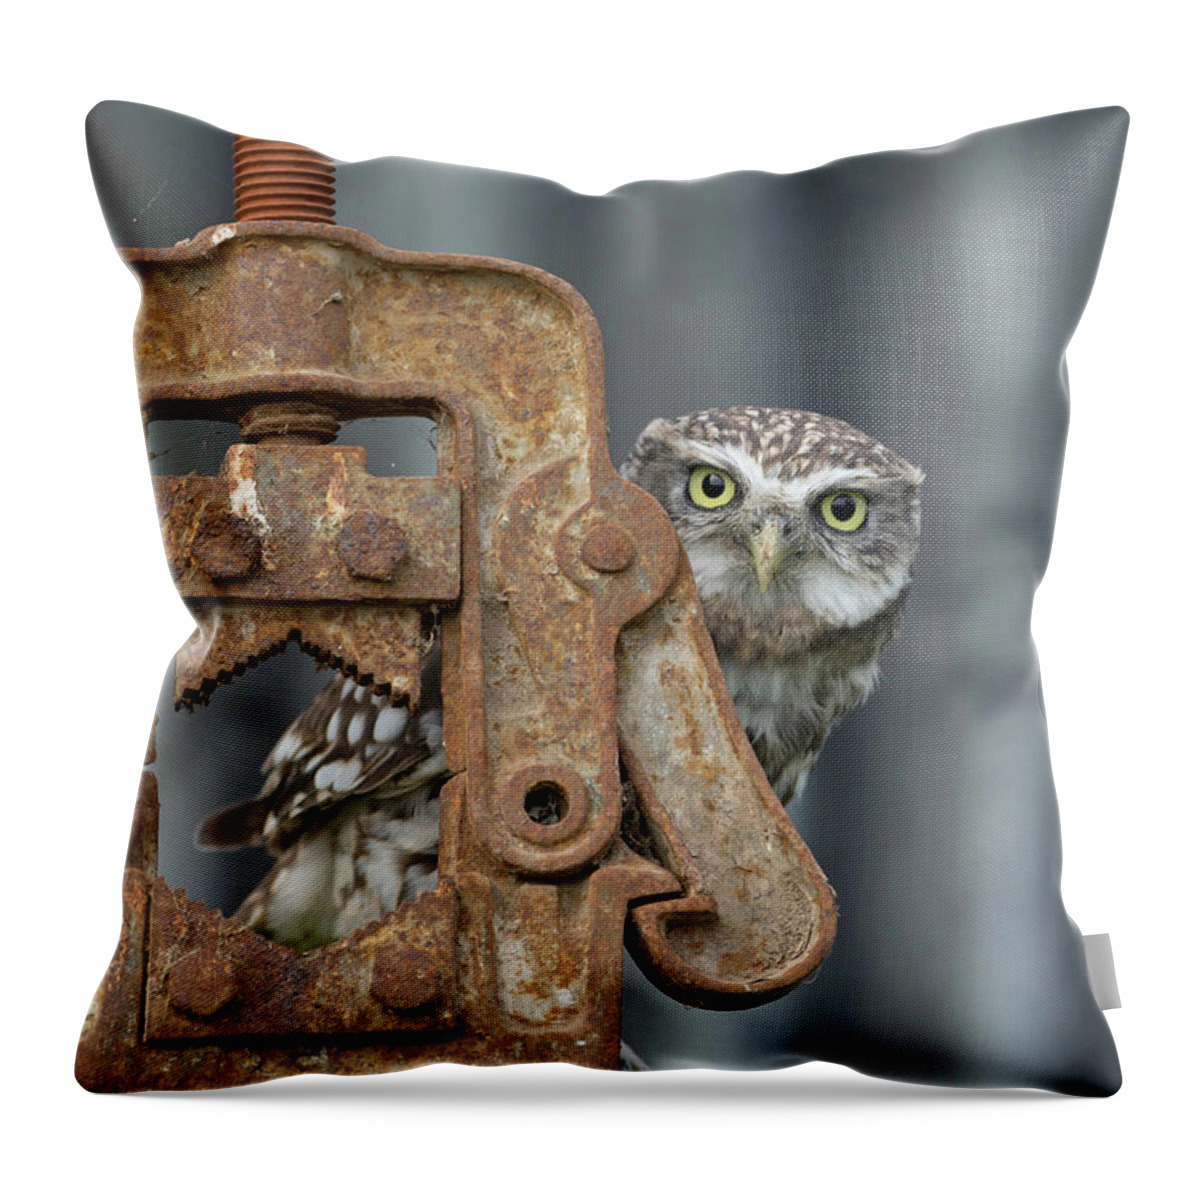 Little Owl Throw Pillow featuring the photograph Little Owl Peeking by Pete Walkden